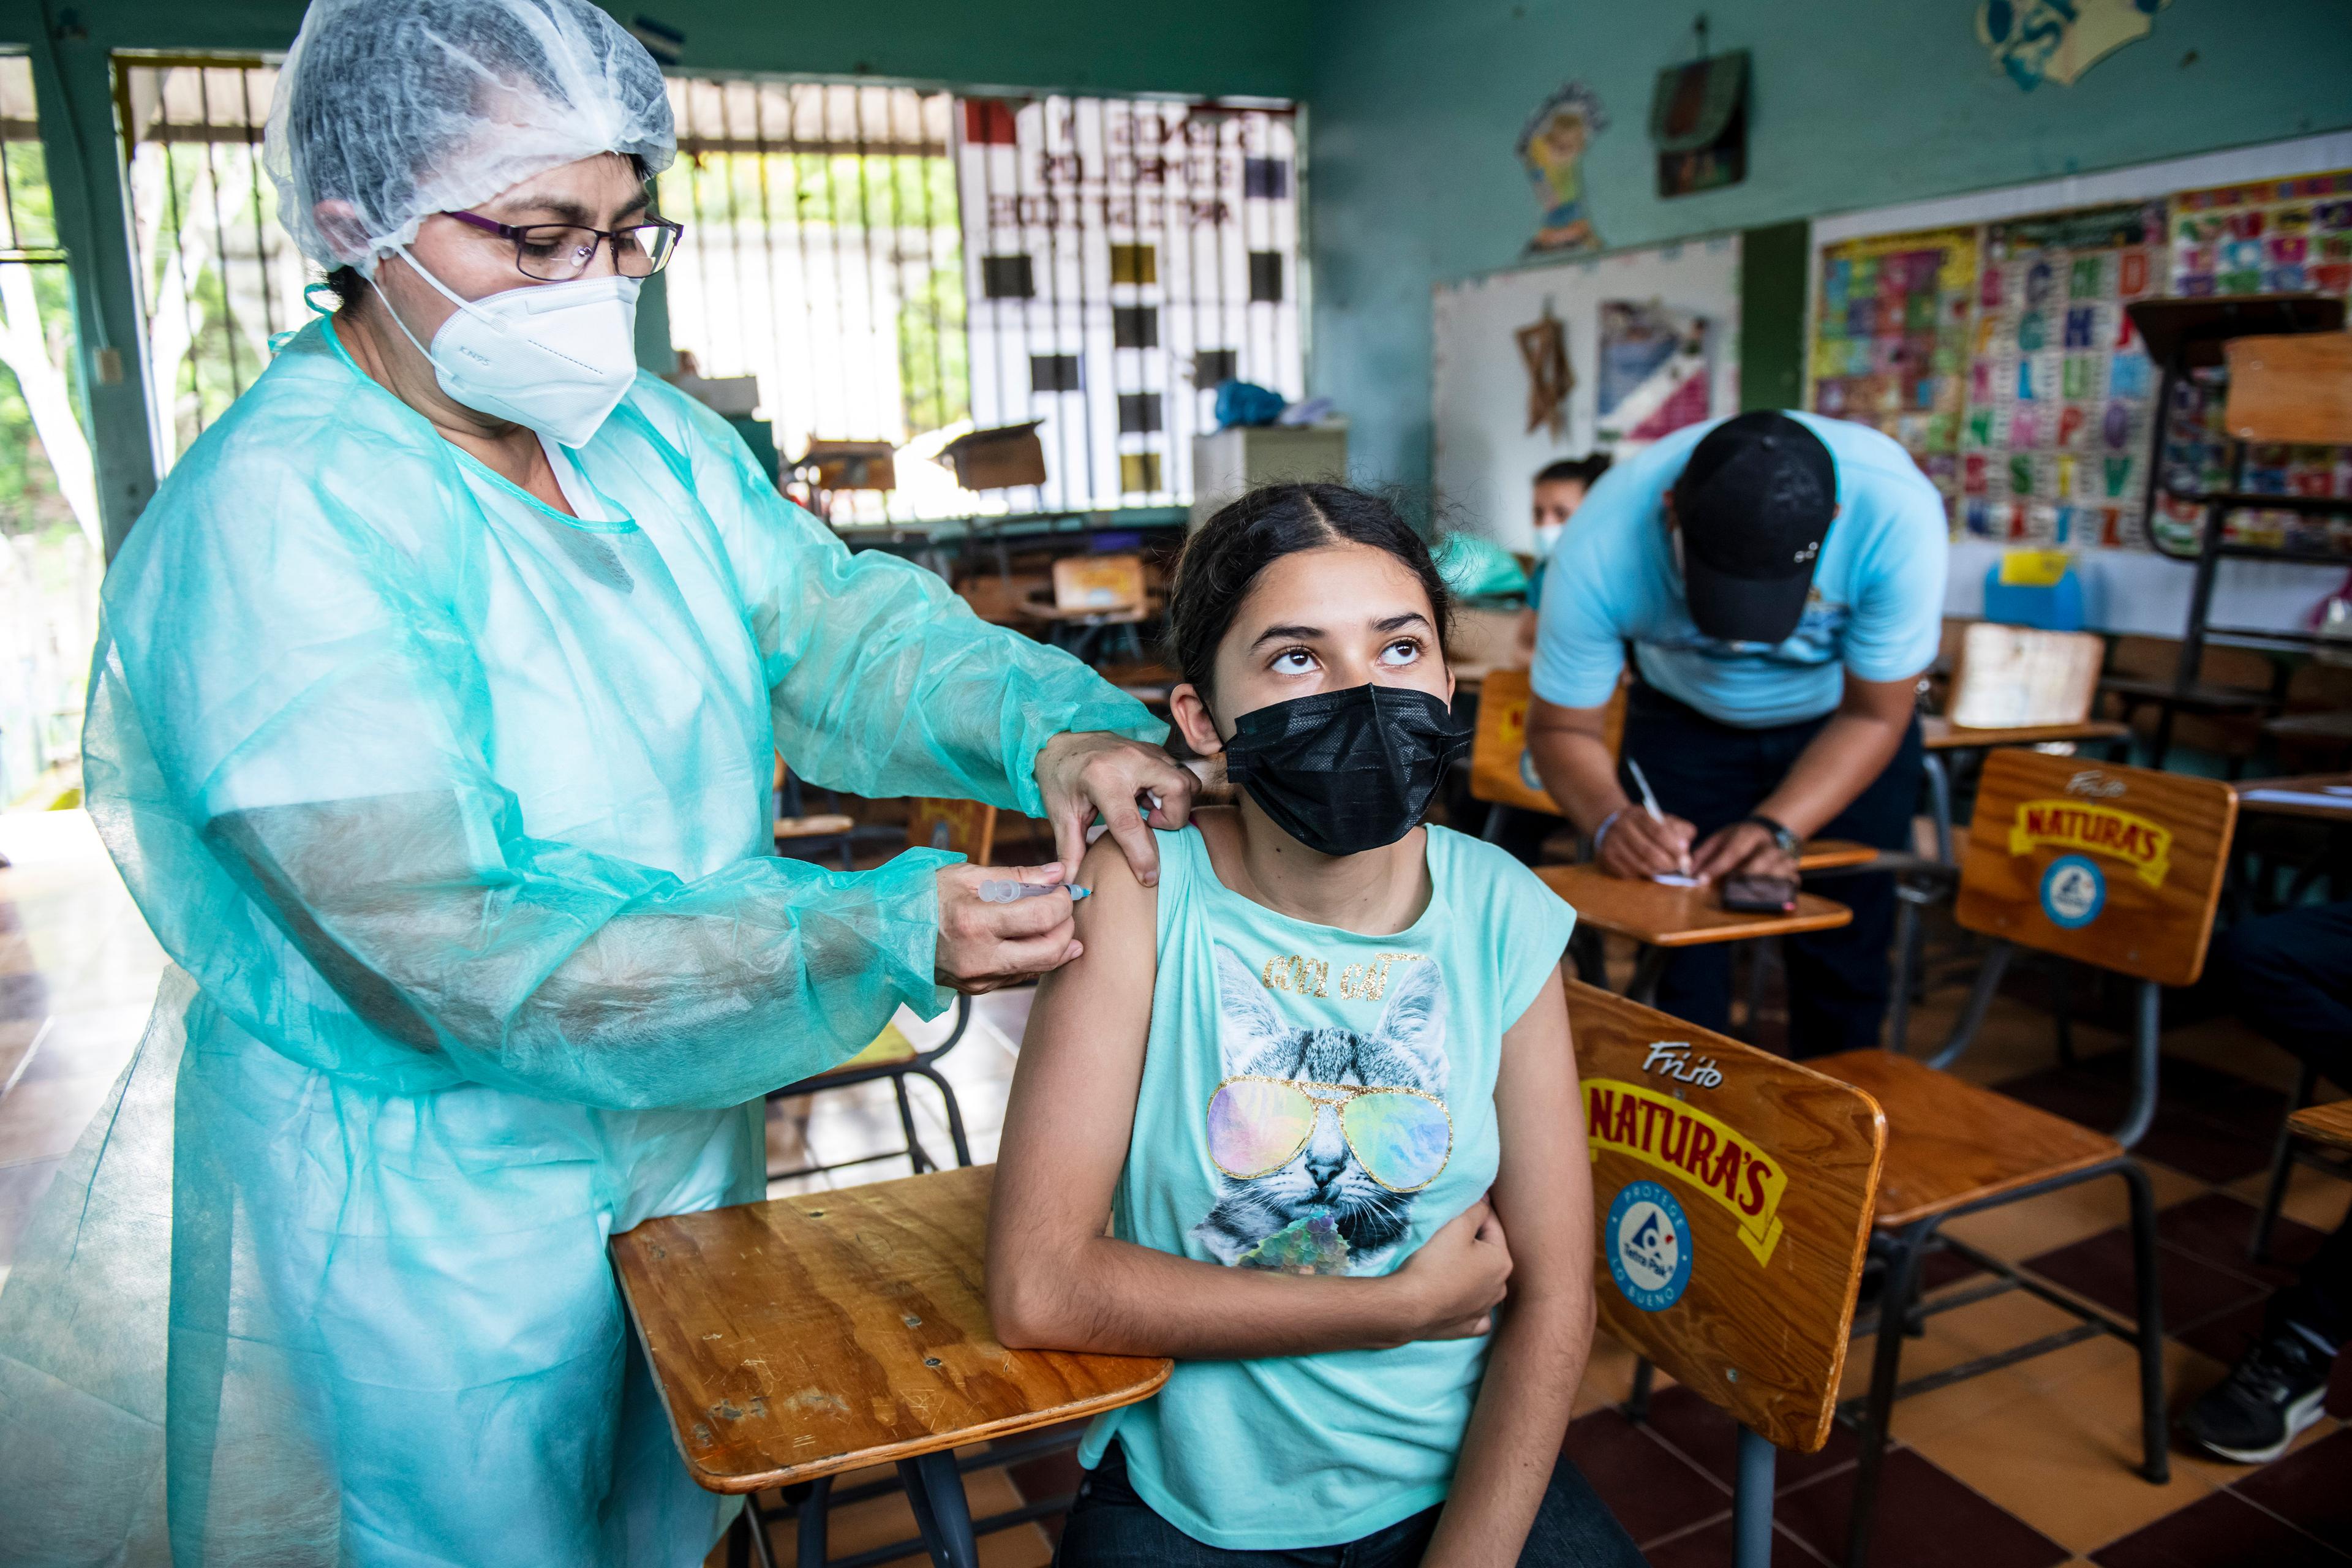 Une femme en vêtements de protection vaccine une adolescente dans une école.